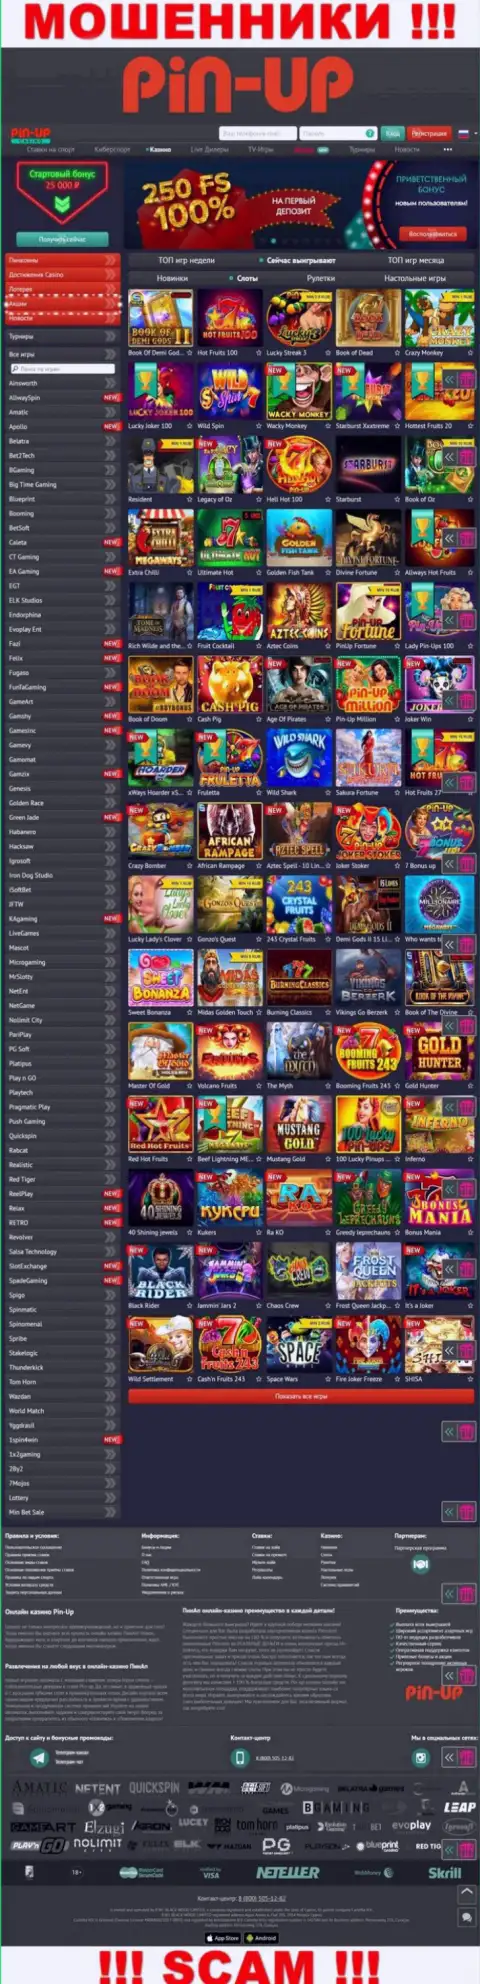 Pin-Up Casino - это официальный онлайн-сервис интернет-мошенников Пин Ап Казино